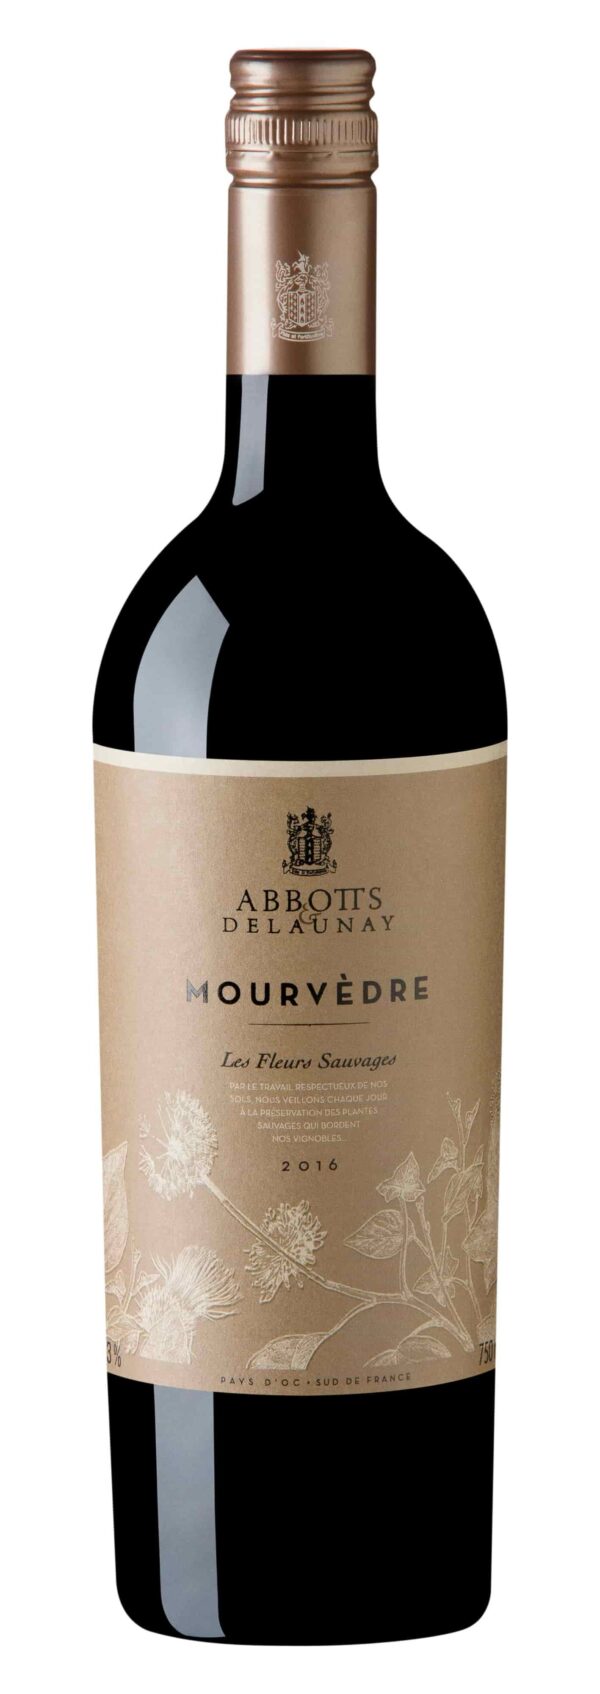 Les Fleurs Sauvages' Mourvèdre Pays d'Oc IGP vinho tinto francês